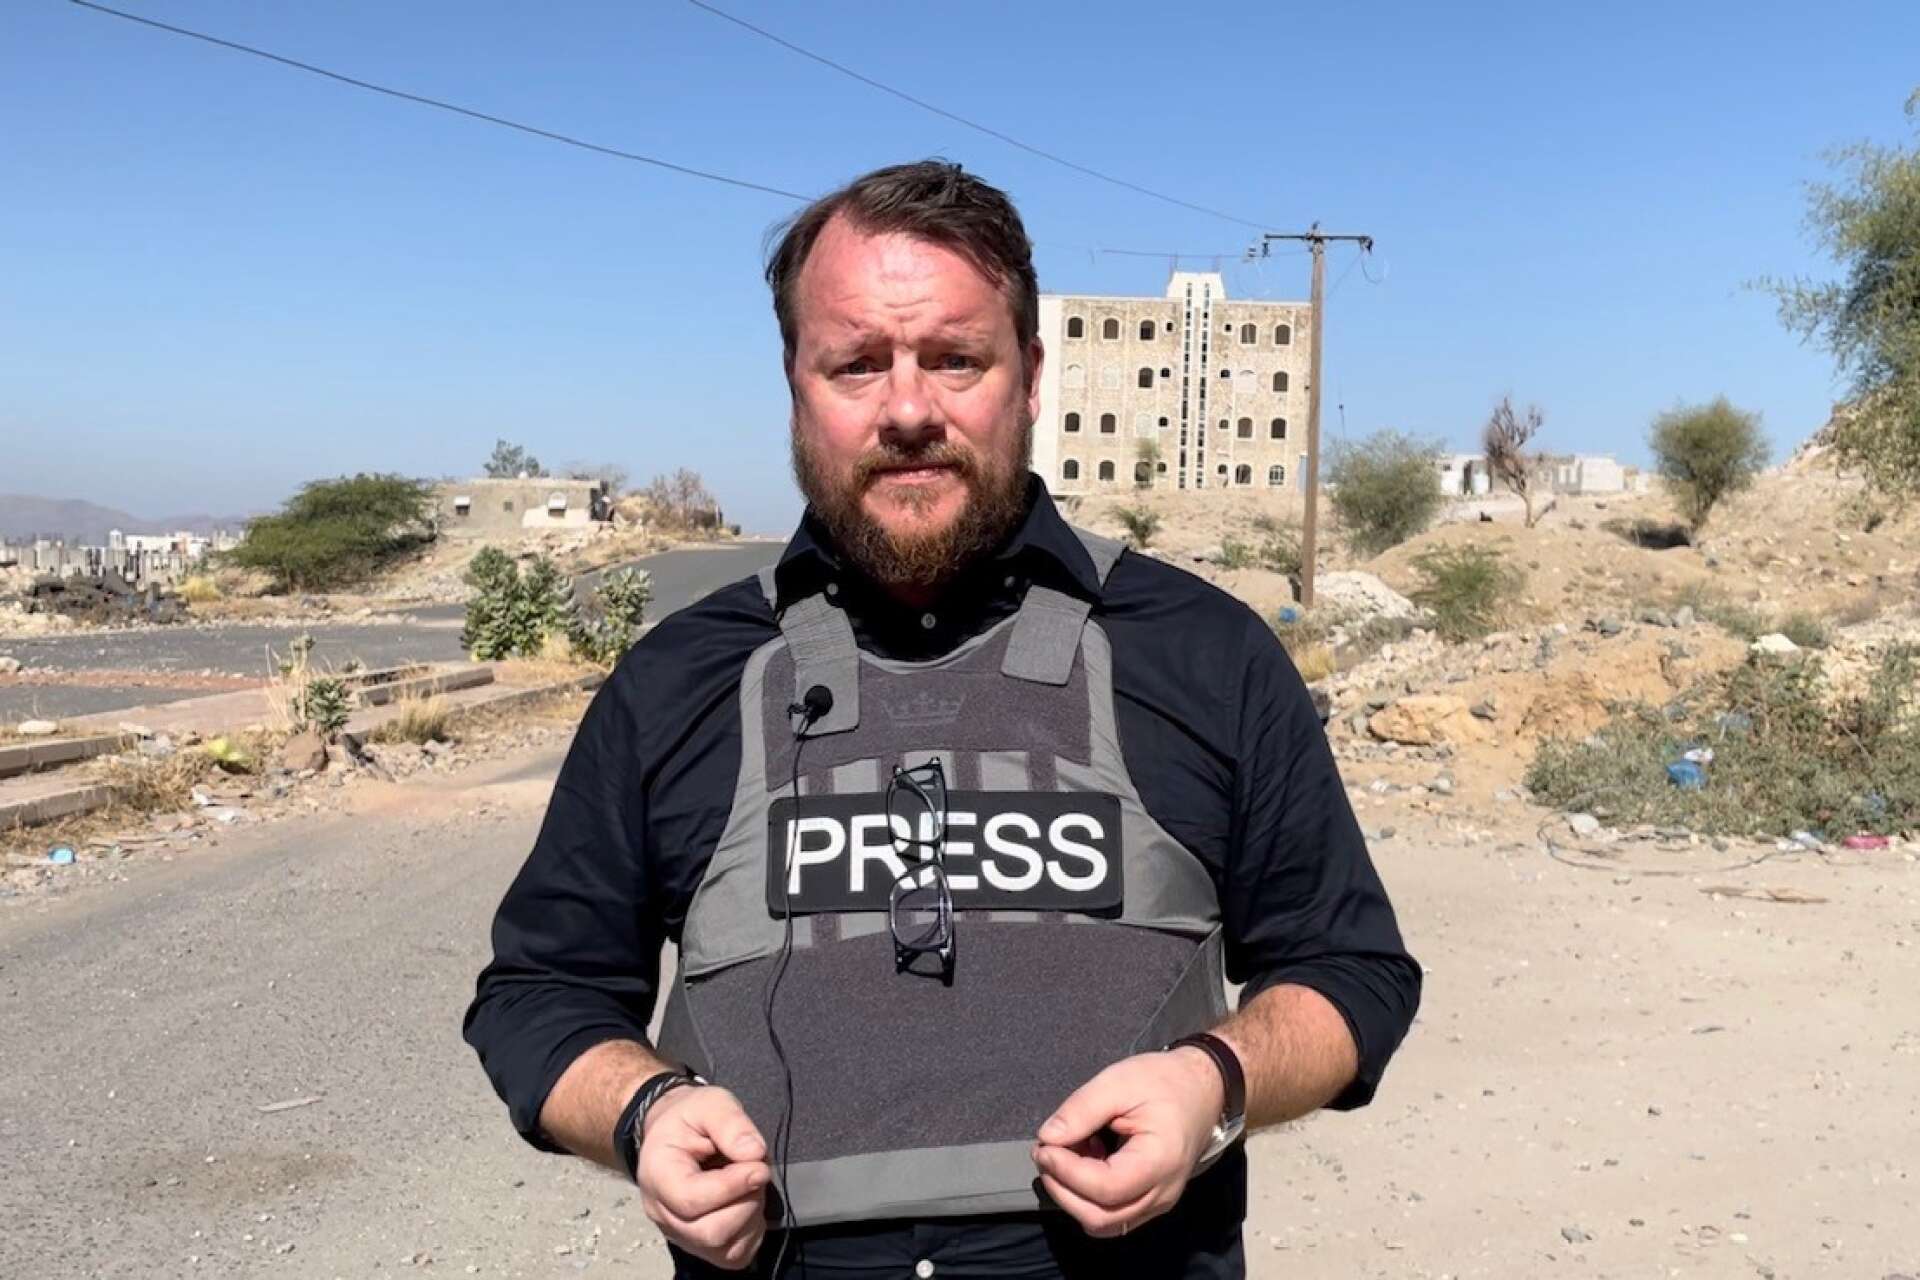 Johan-Mathias Sommarström är en av få journalister som har släppts in i Jemen. På fredag kommer han till SPF Seniorerna Bro.